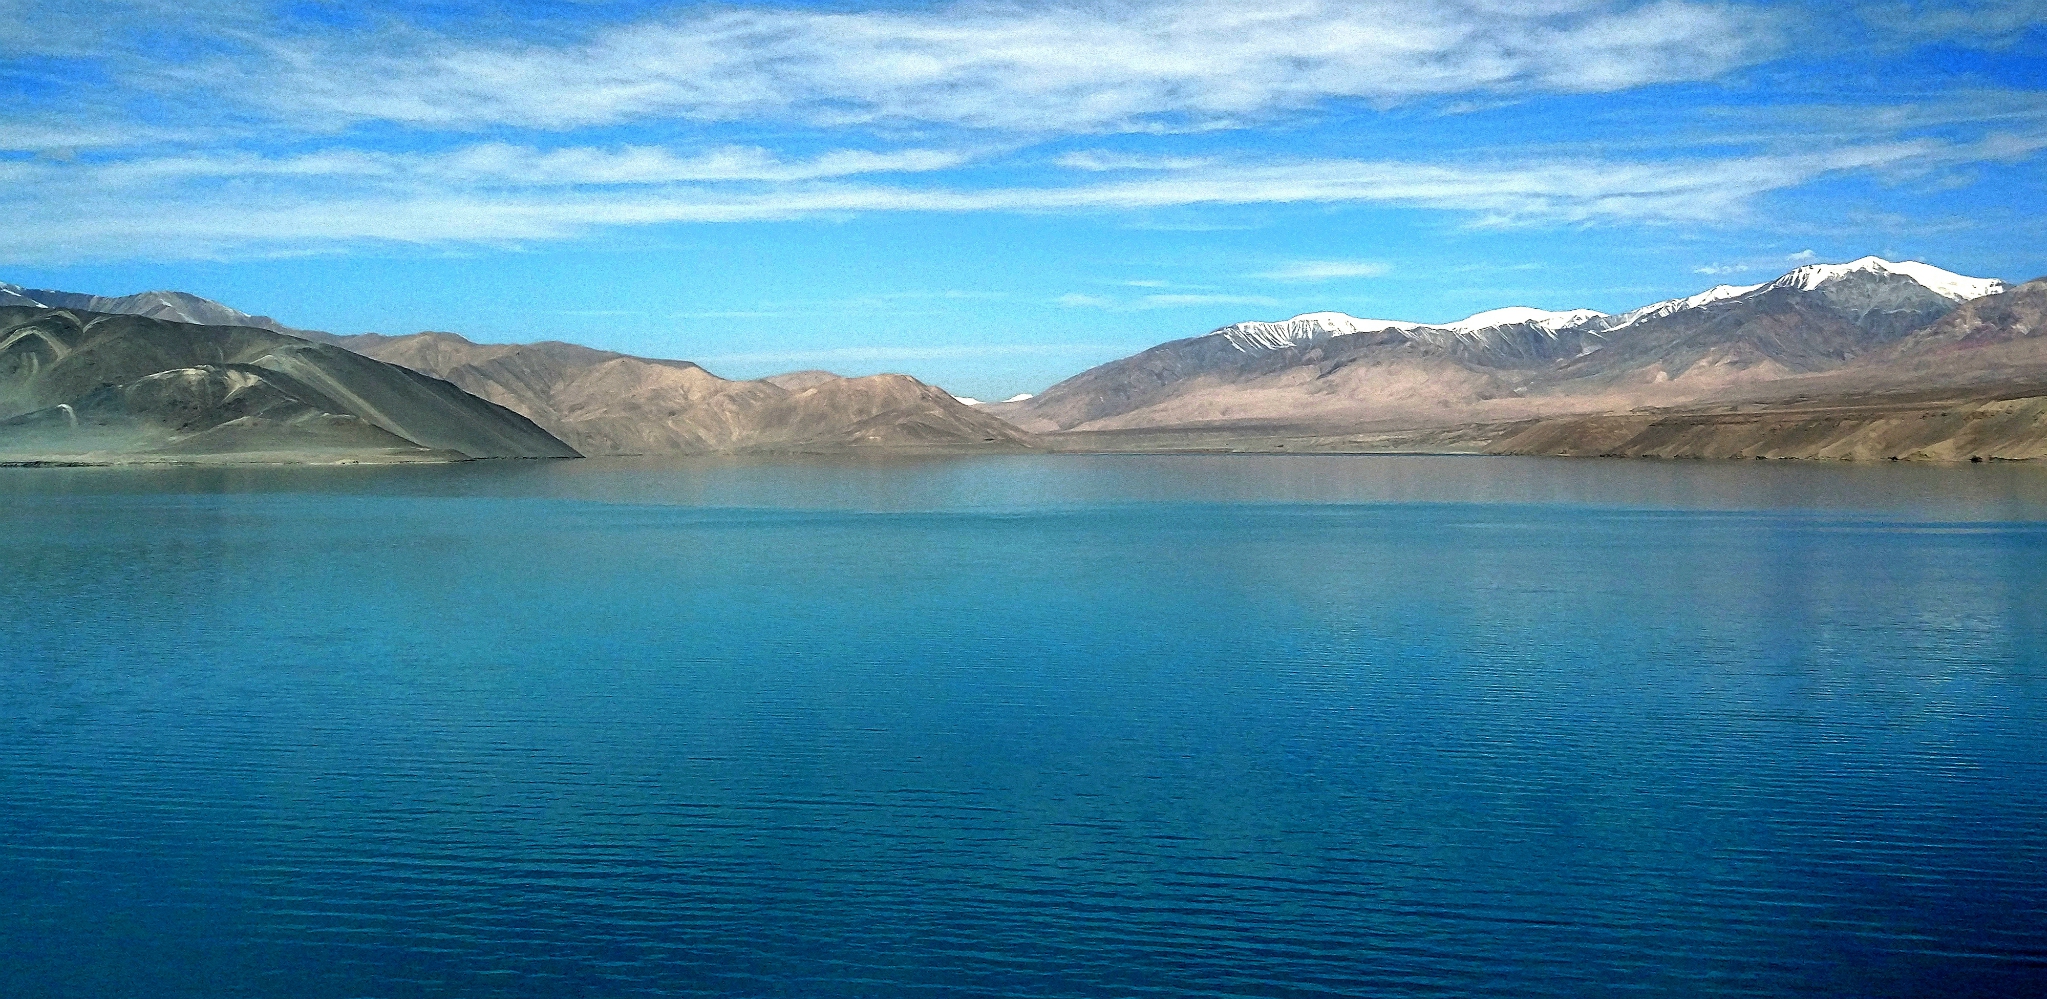 【原创摄影】大美新疆——9、高原明珠喀拉库勒湖